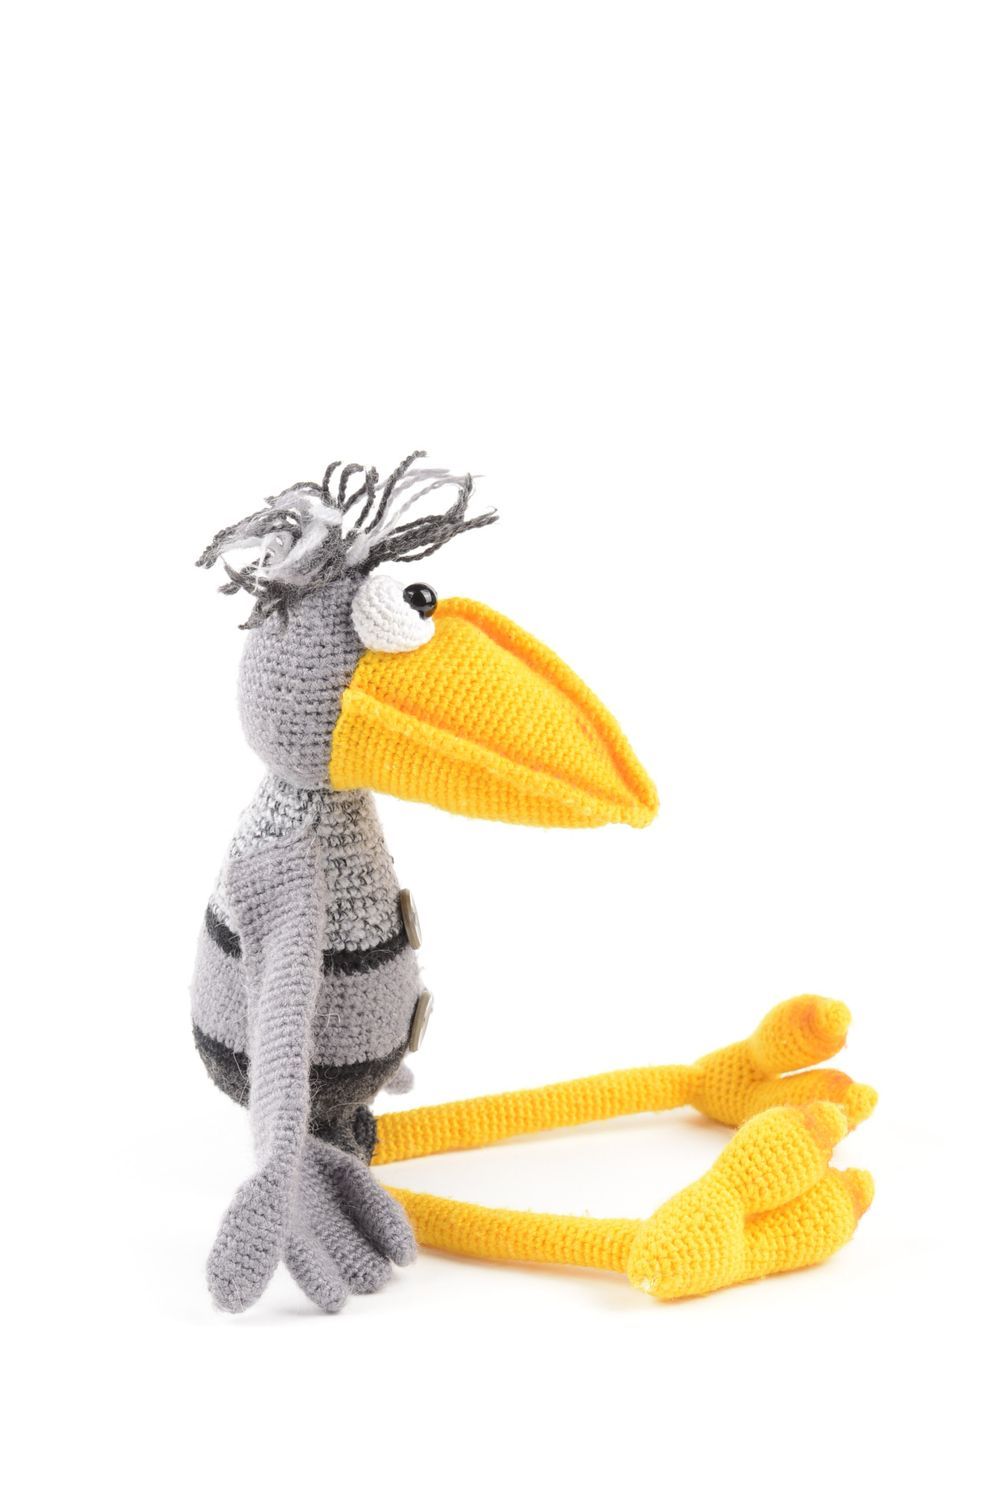 Игрушка ворона ручной работы мягкая игрушка вязаная детская игрушка красивая фото 3